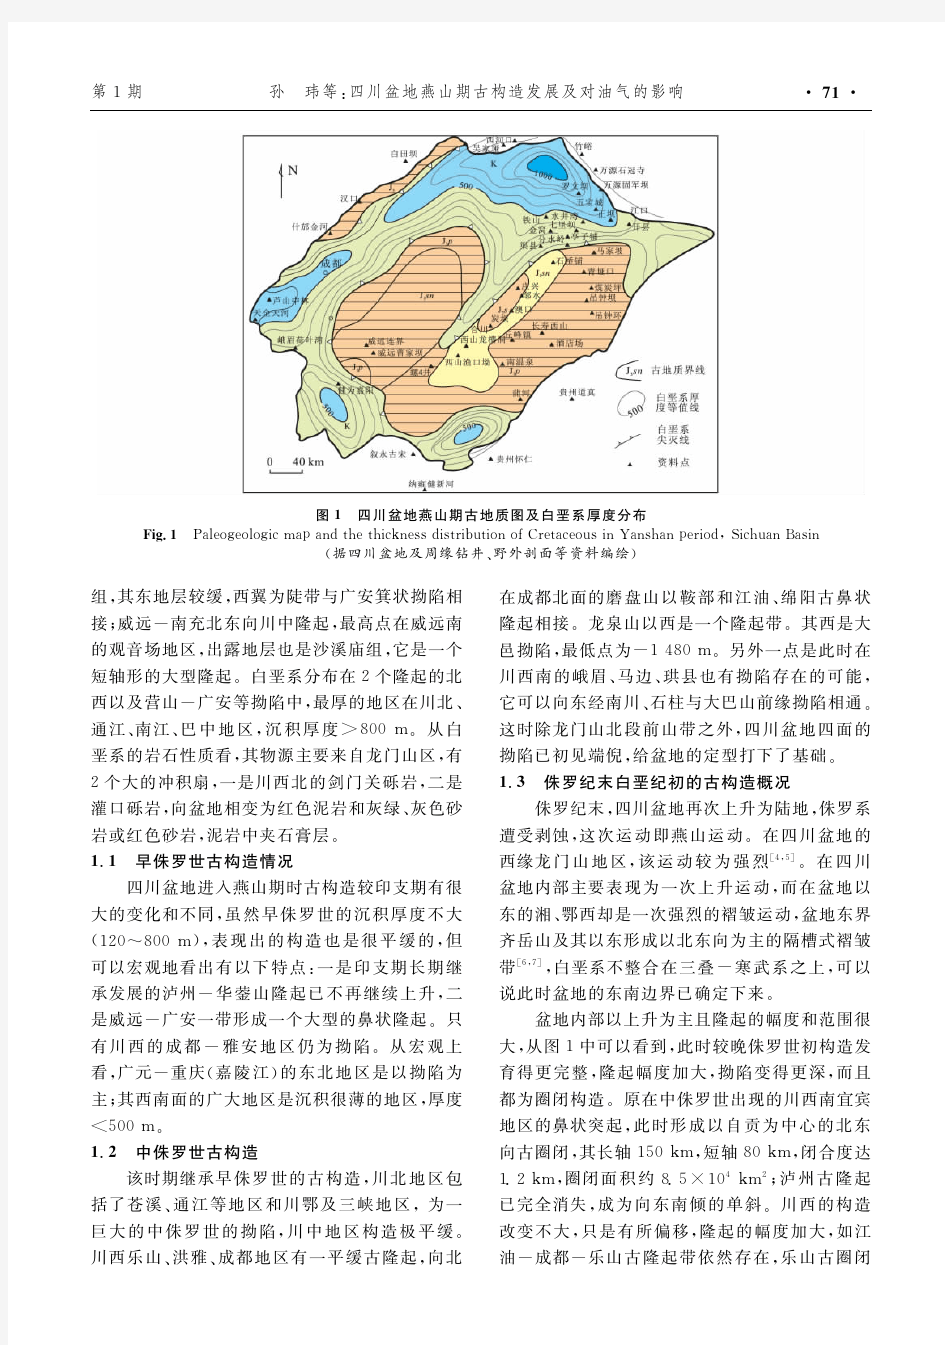 四川盆地燕山期古构造发展及对油气的影响